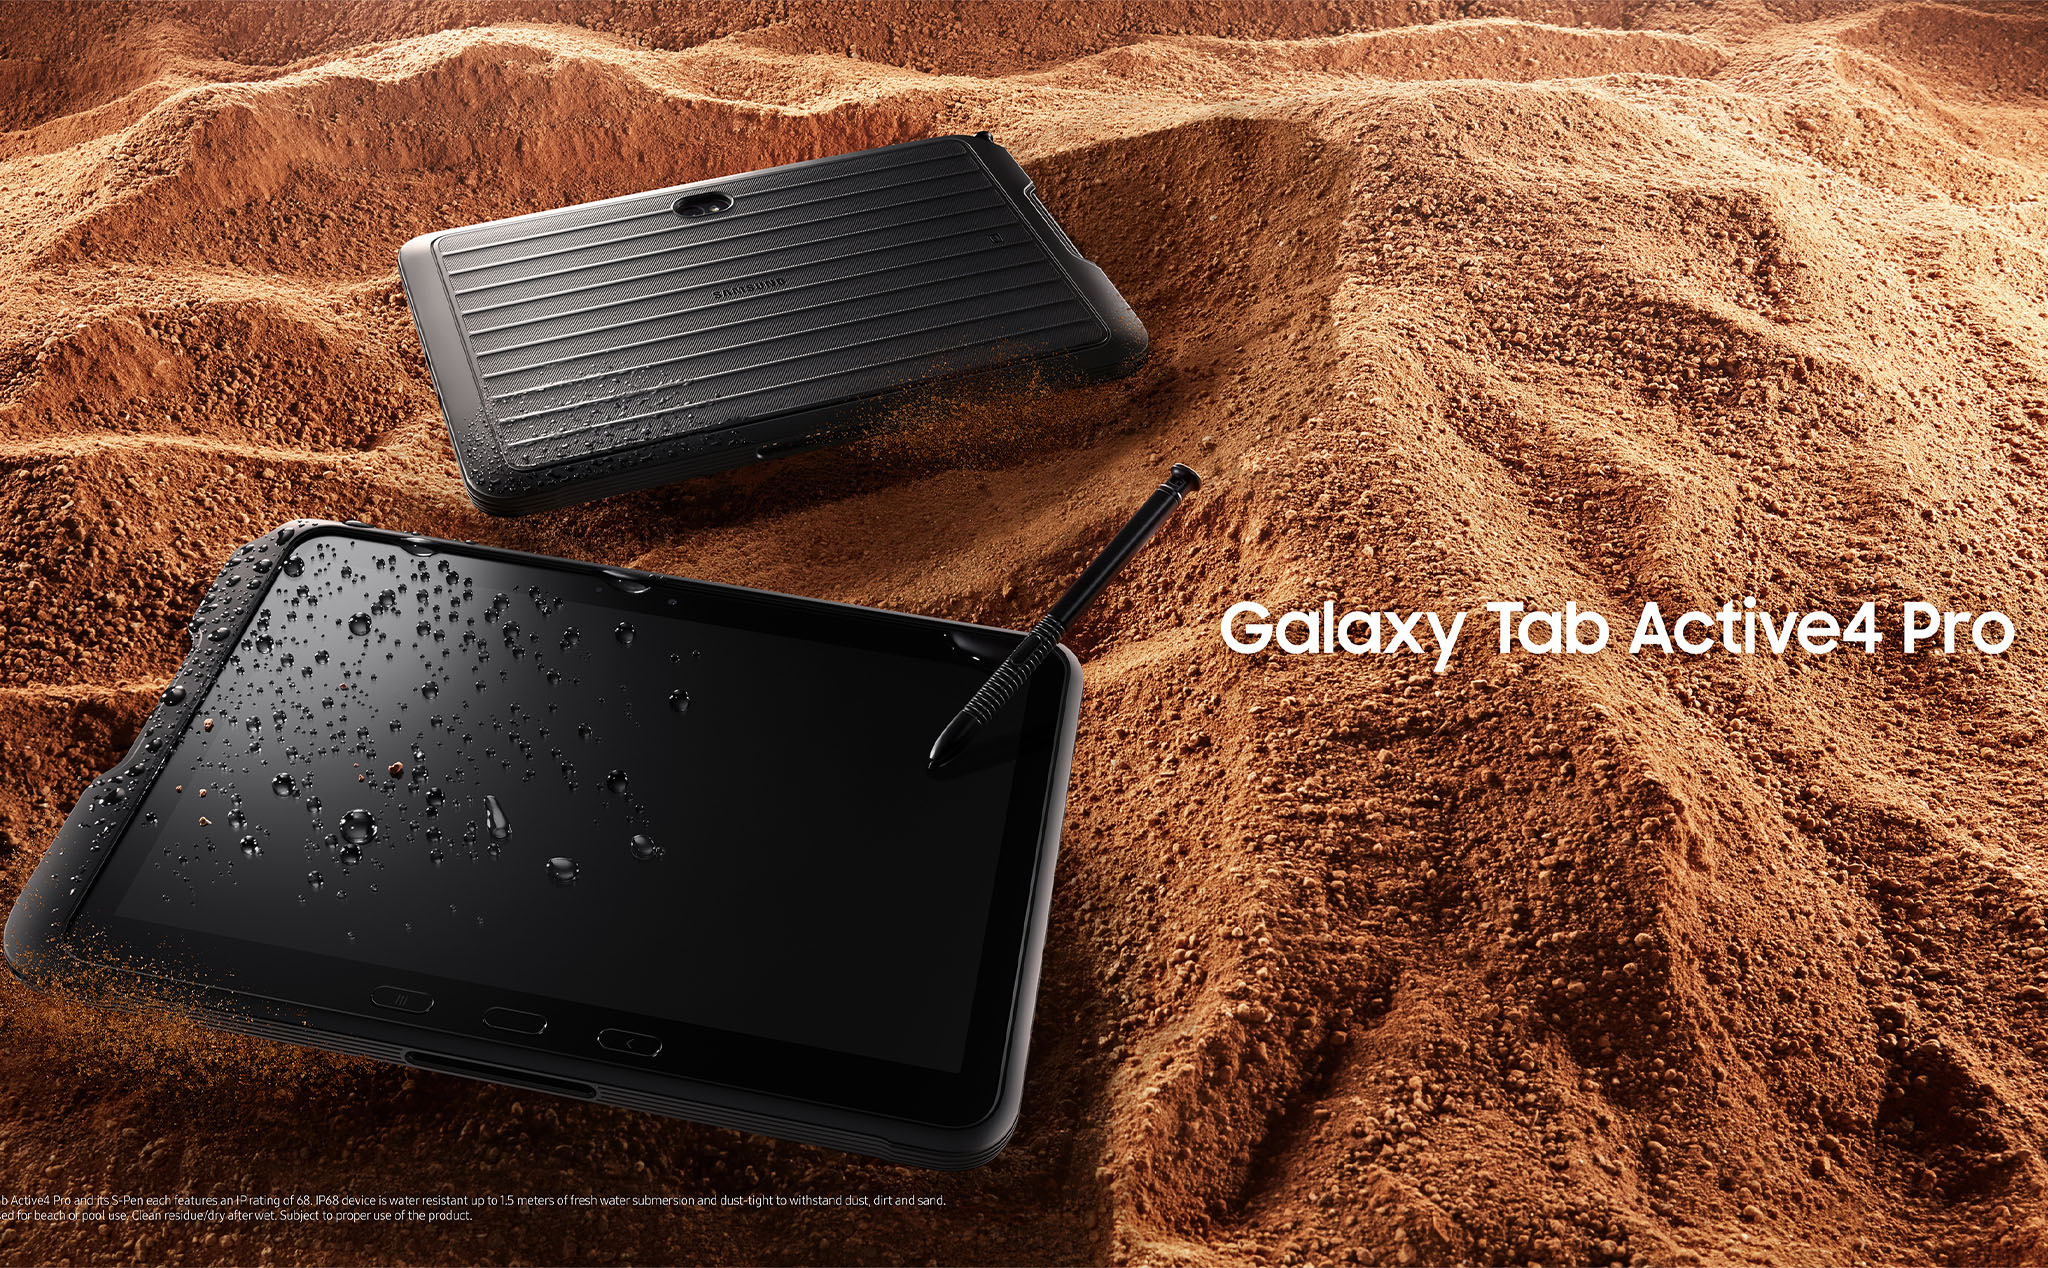 Galaxy Tab Active4 Pro chính thức: Đạt chuẩn IP68 | MIL-STD-810H, pin 7.600mAh có thể thay được